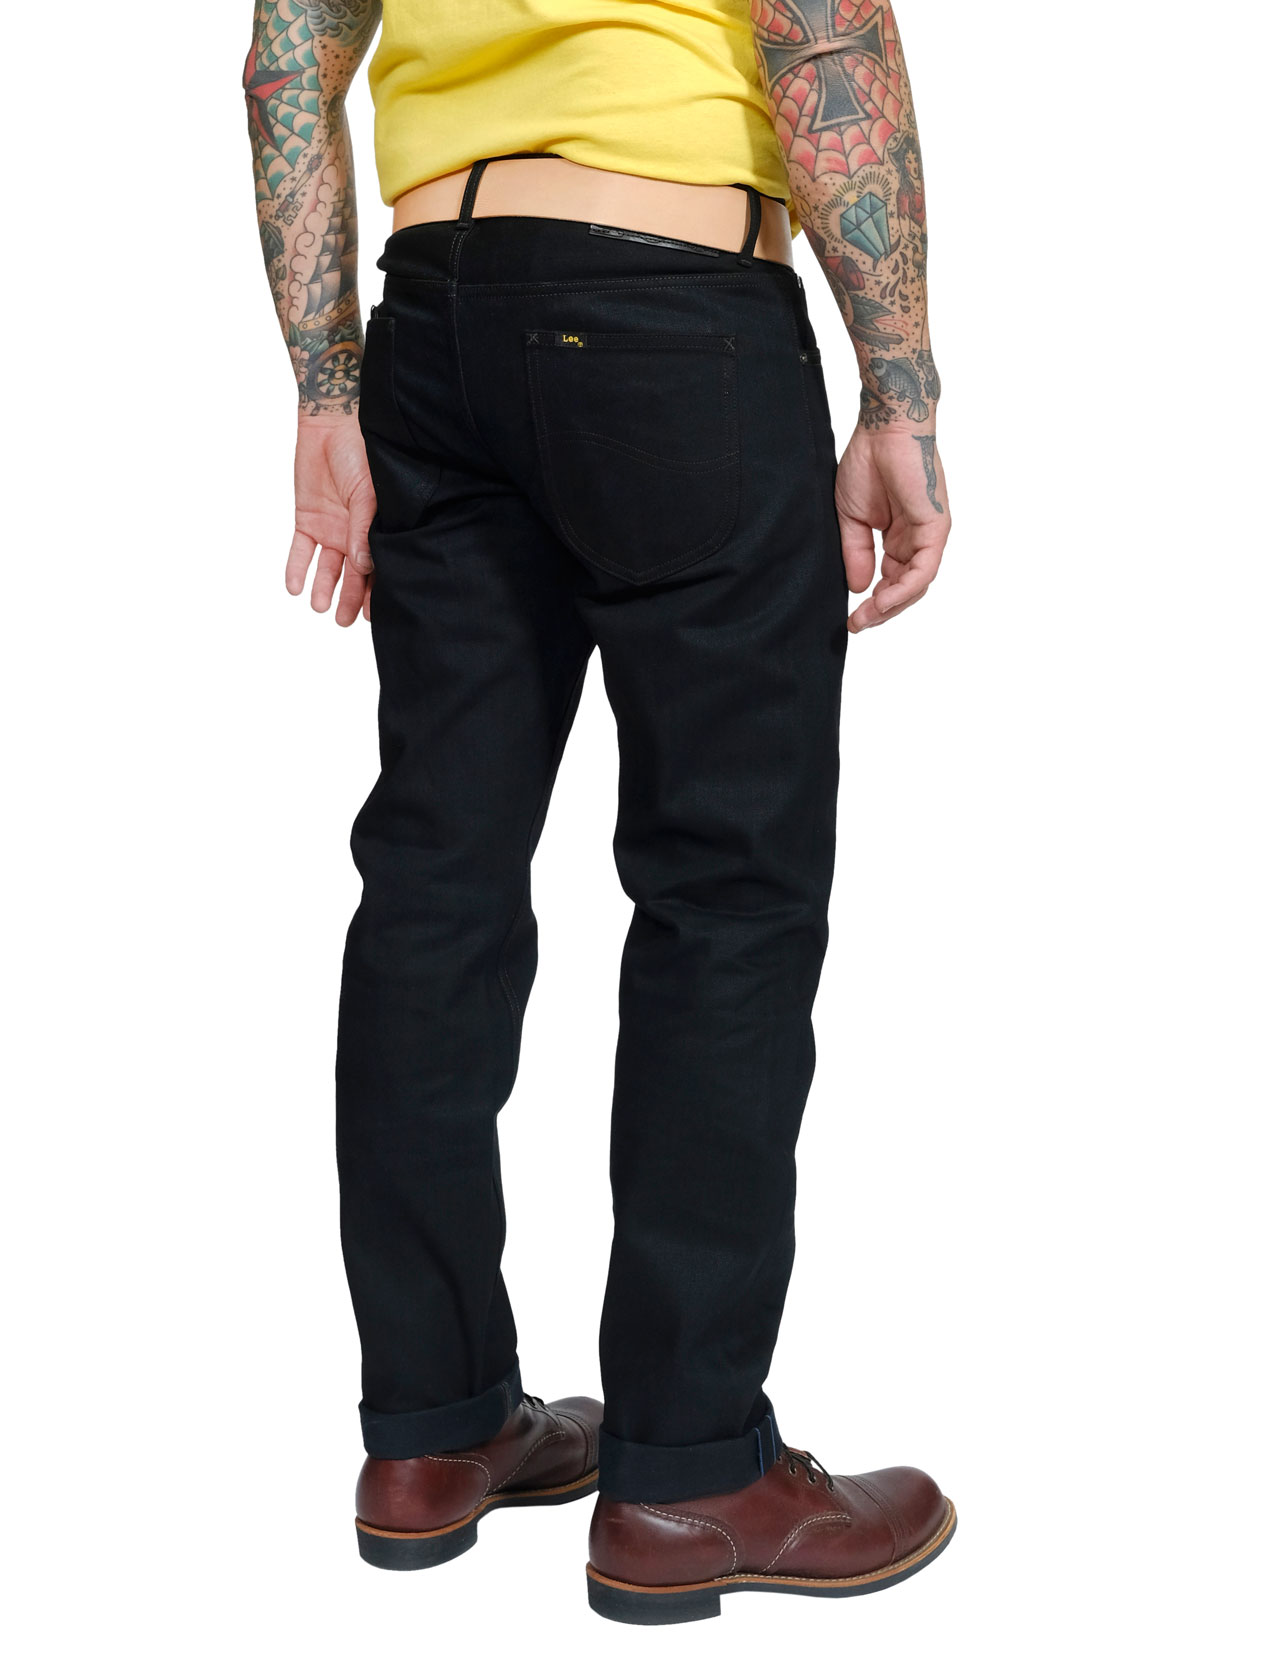 Lee - 101 S Regular Fit Jeans Dry Black - 13oz